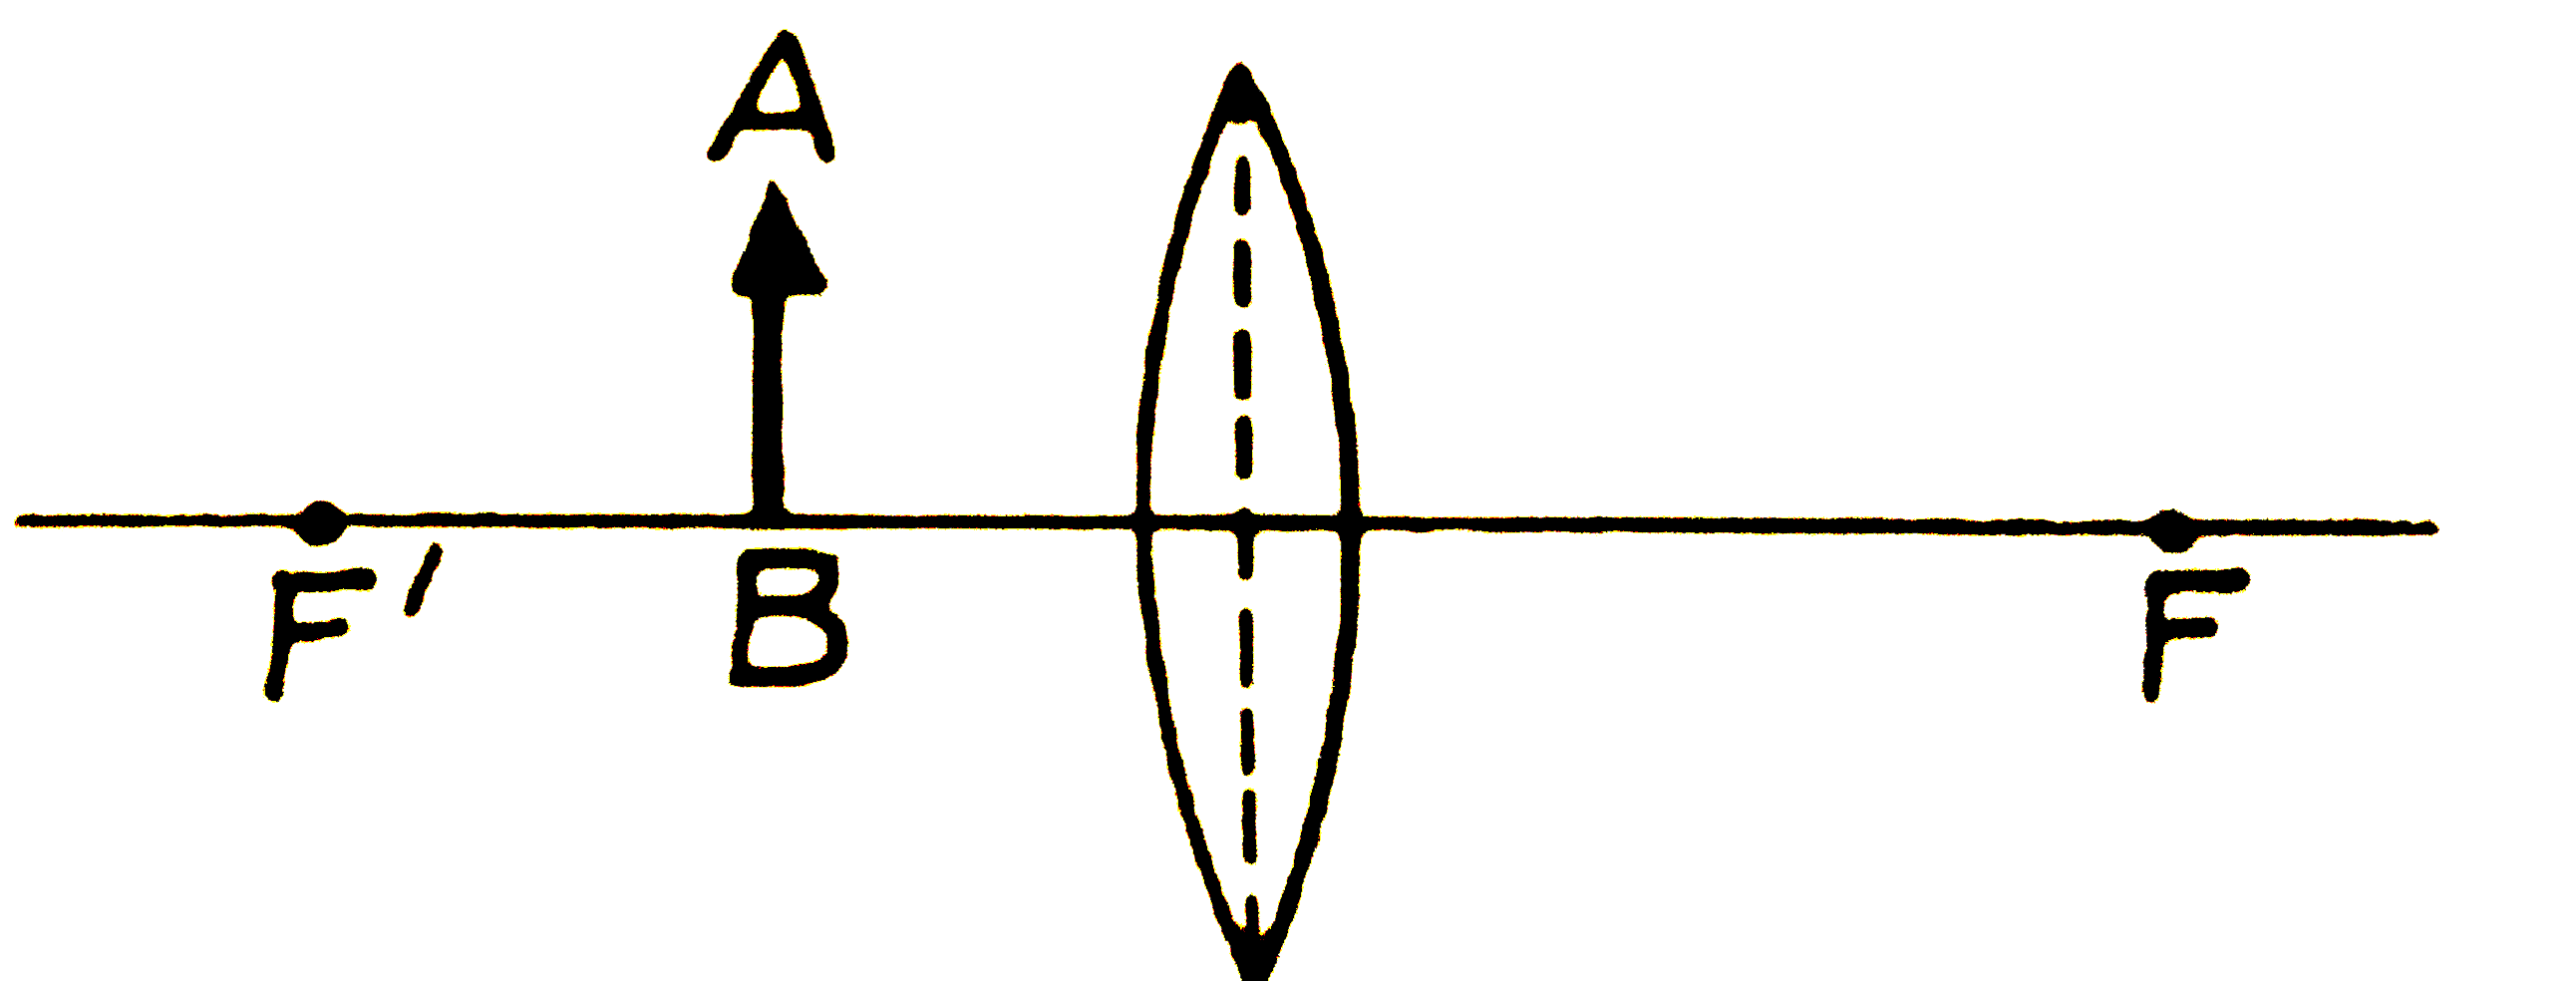 एक उत्तल लेन्स के समाने उसके प्रकाशिक -केन्द्र और फोकस के बीच एक वस्तु AB रखी है। किरण-आरेख खींचकर वस्तु AB का प्रतिबिम्ब बनाइए। प्रतिबिम्ब की प्रकृति सम्बन्धी तीन गुण  लिखिए ।